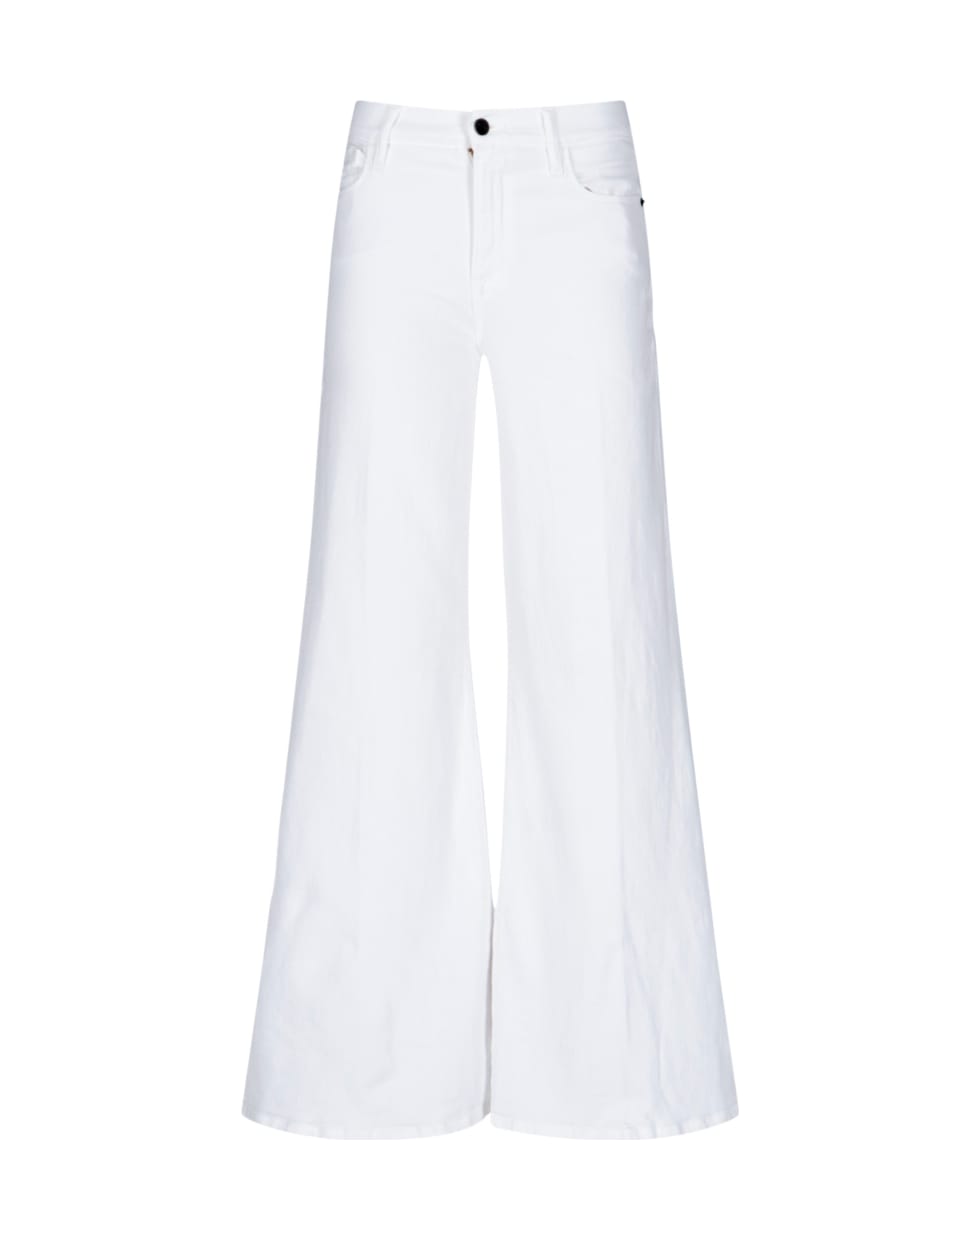 Frame Jeans - White